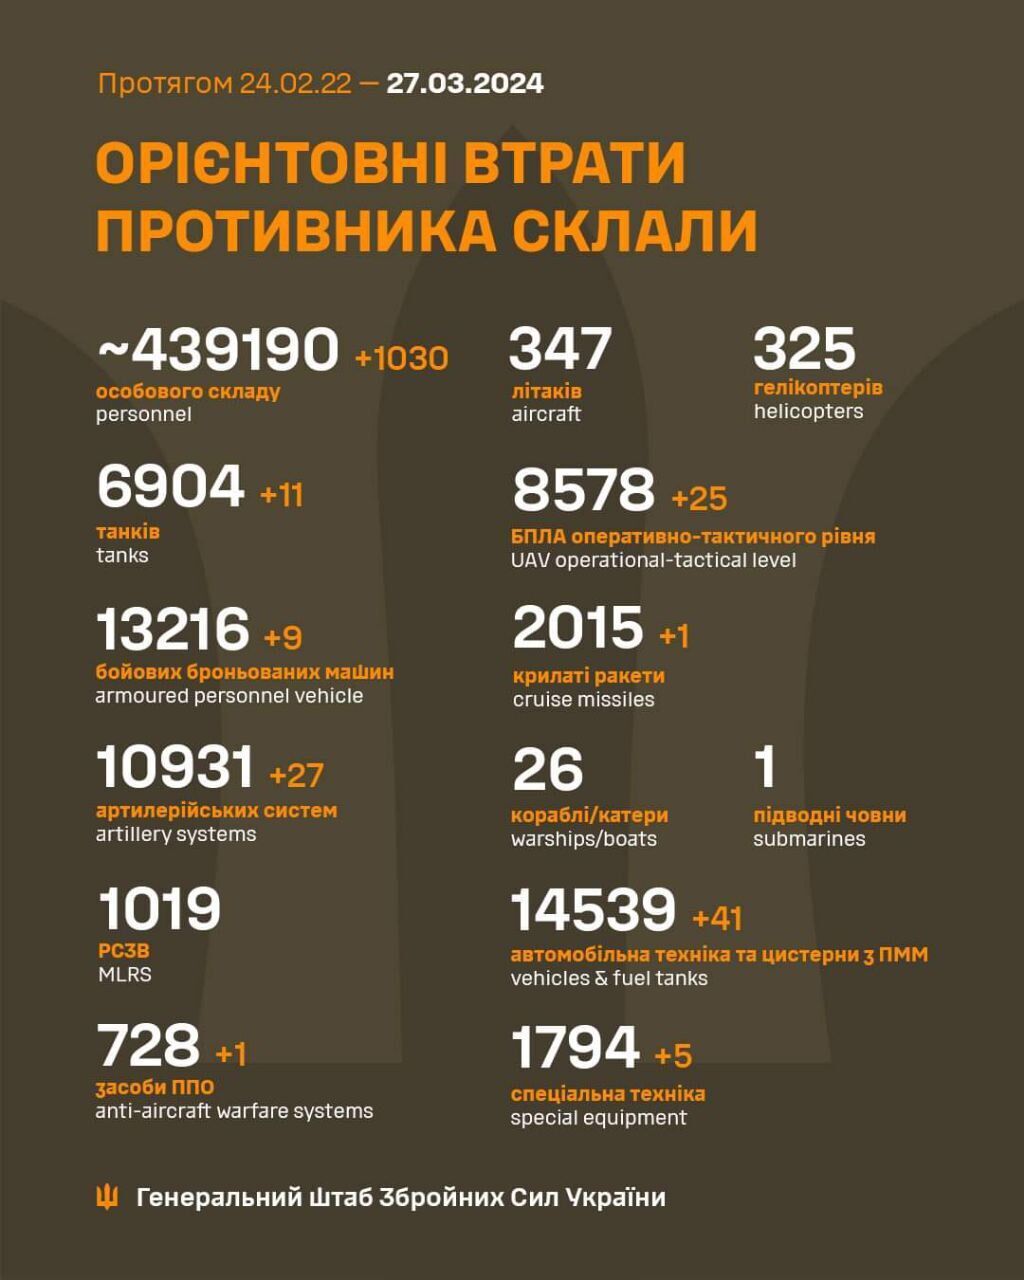 Минус 1030 оккупантов и 27 артсистем врага: Генштаб обновил статистику потерь России в войне